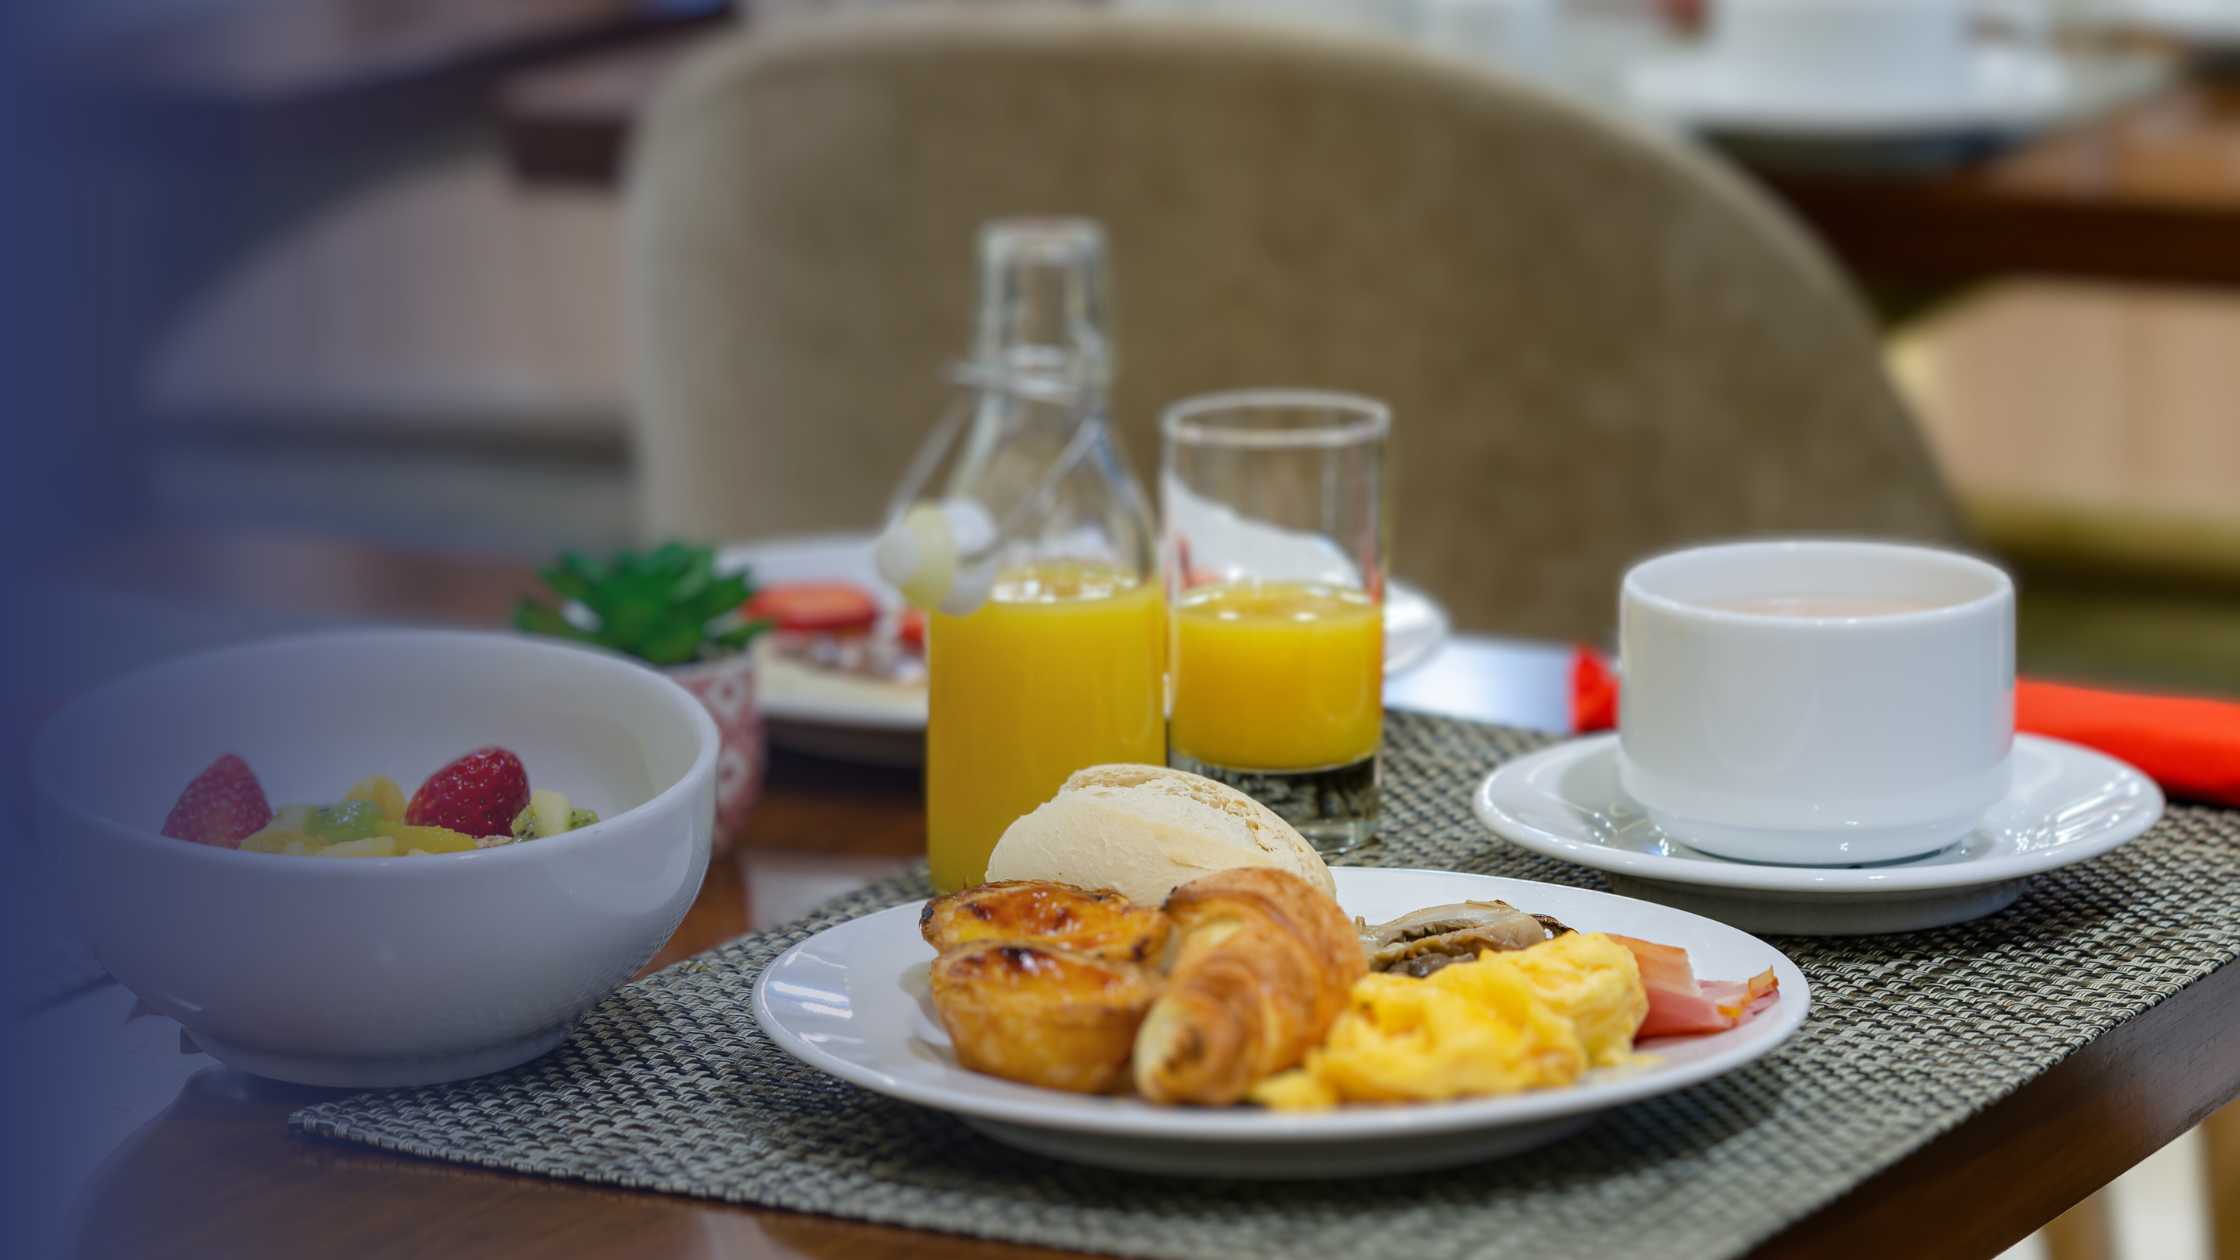 Ratio petit-déjeuner : les clés d'un petit-déjeuner rentable